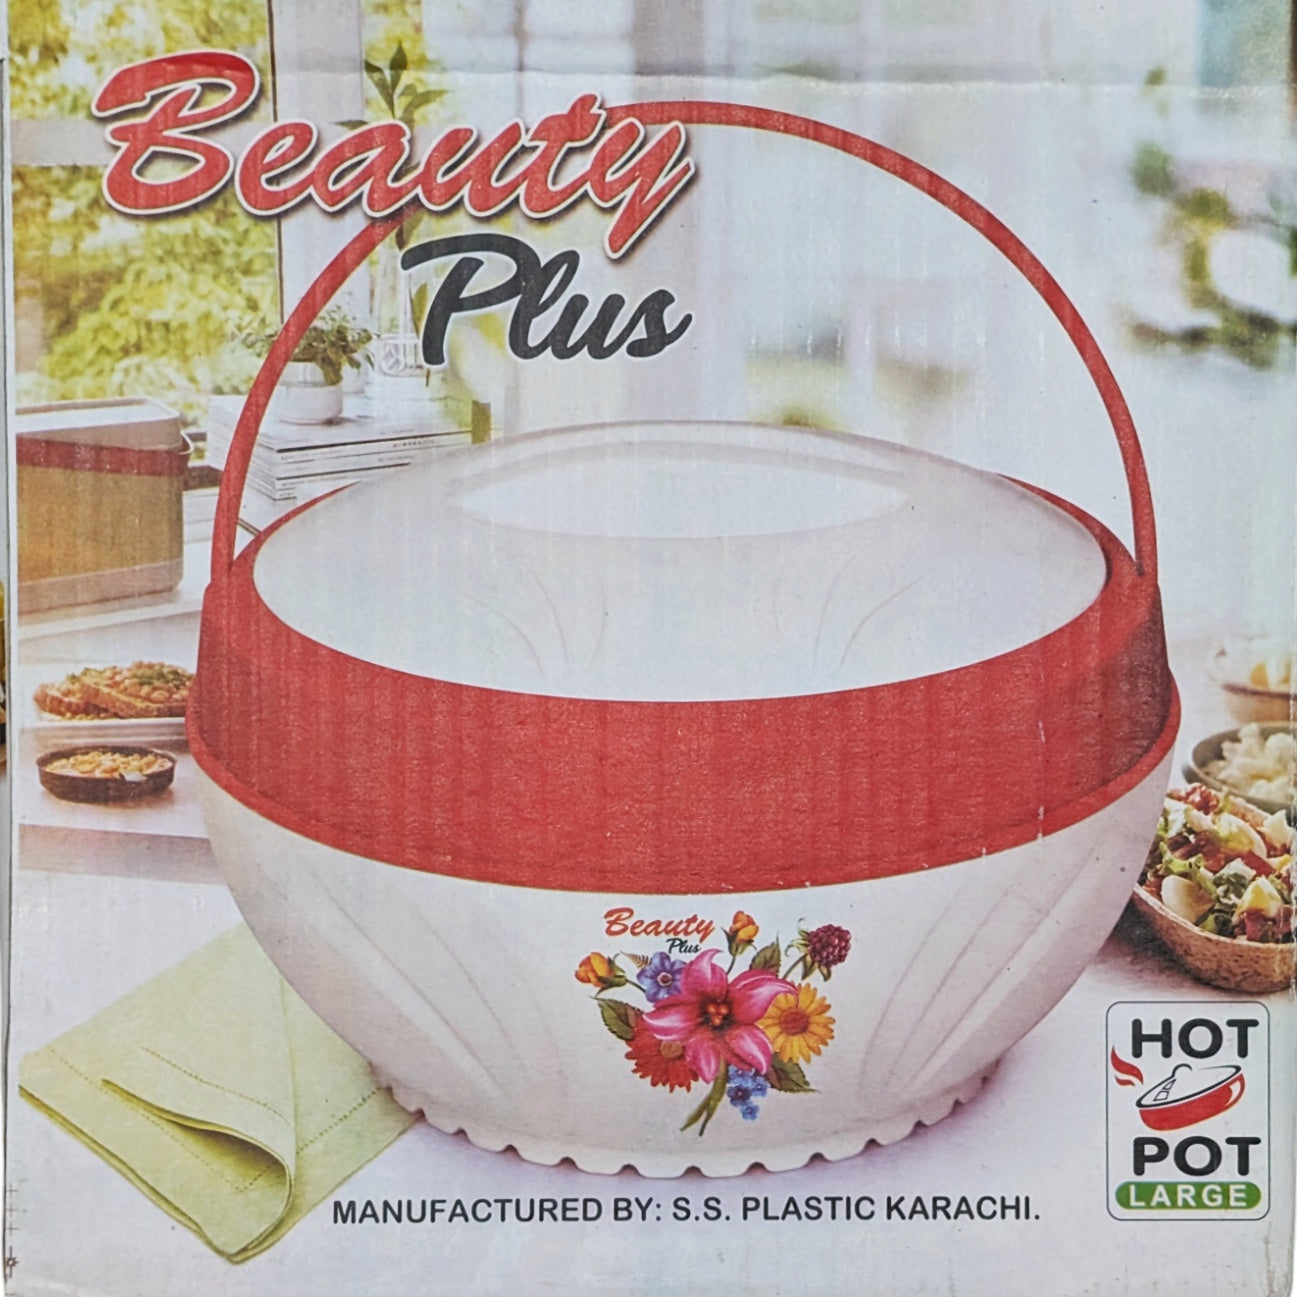 Hot Pot Large - Beauty Plus